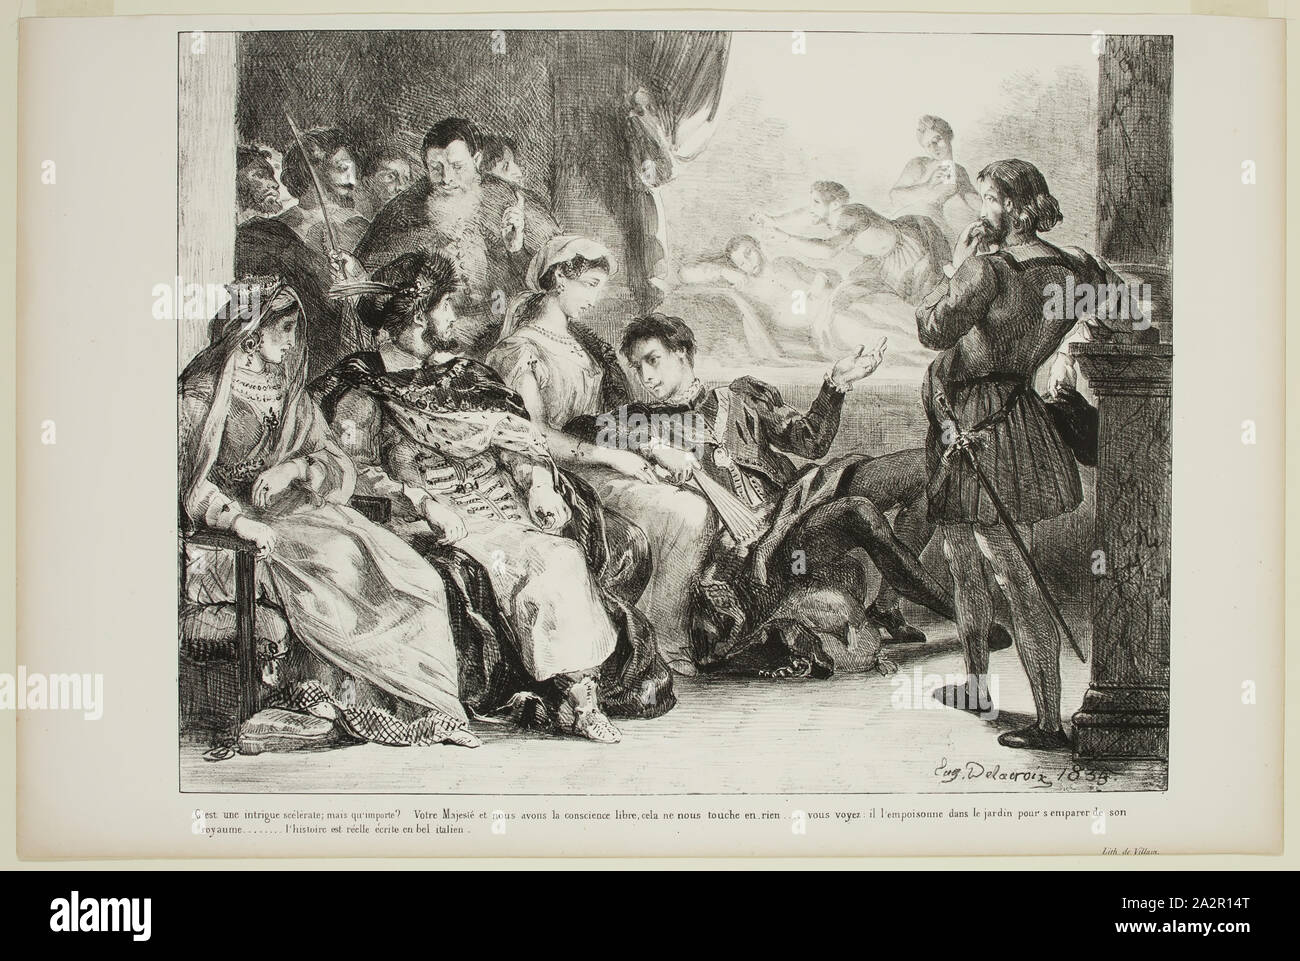 Eugène Delacroix, French, 1798-1863, Hamlet fait jouer aux comediens la scene de l'empoisonnement de son pere, 1835, lithograph printed in black ink on wove paper, Image: 9 3/4 × 12 11/16 inches (24.8 × 32.2 cm Stock Photo